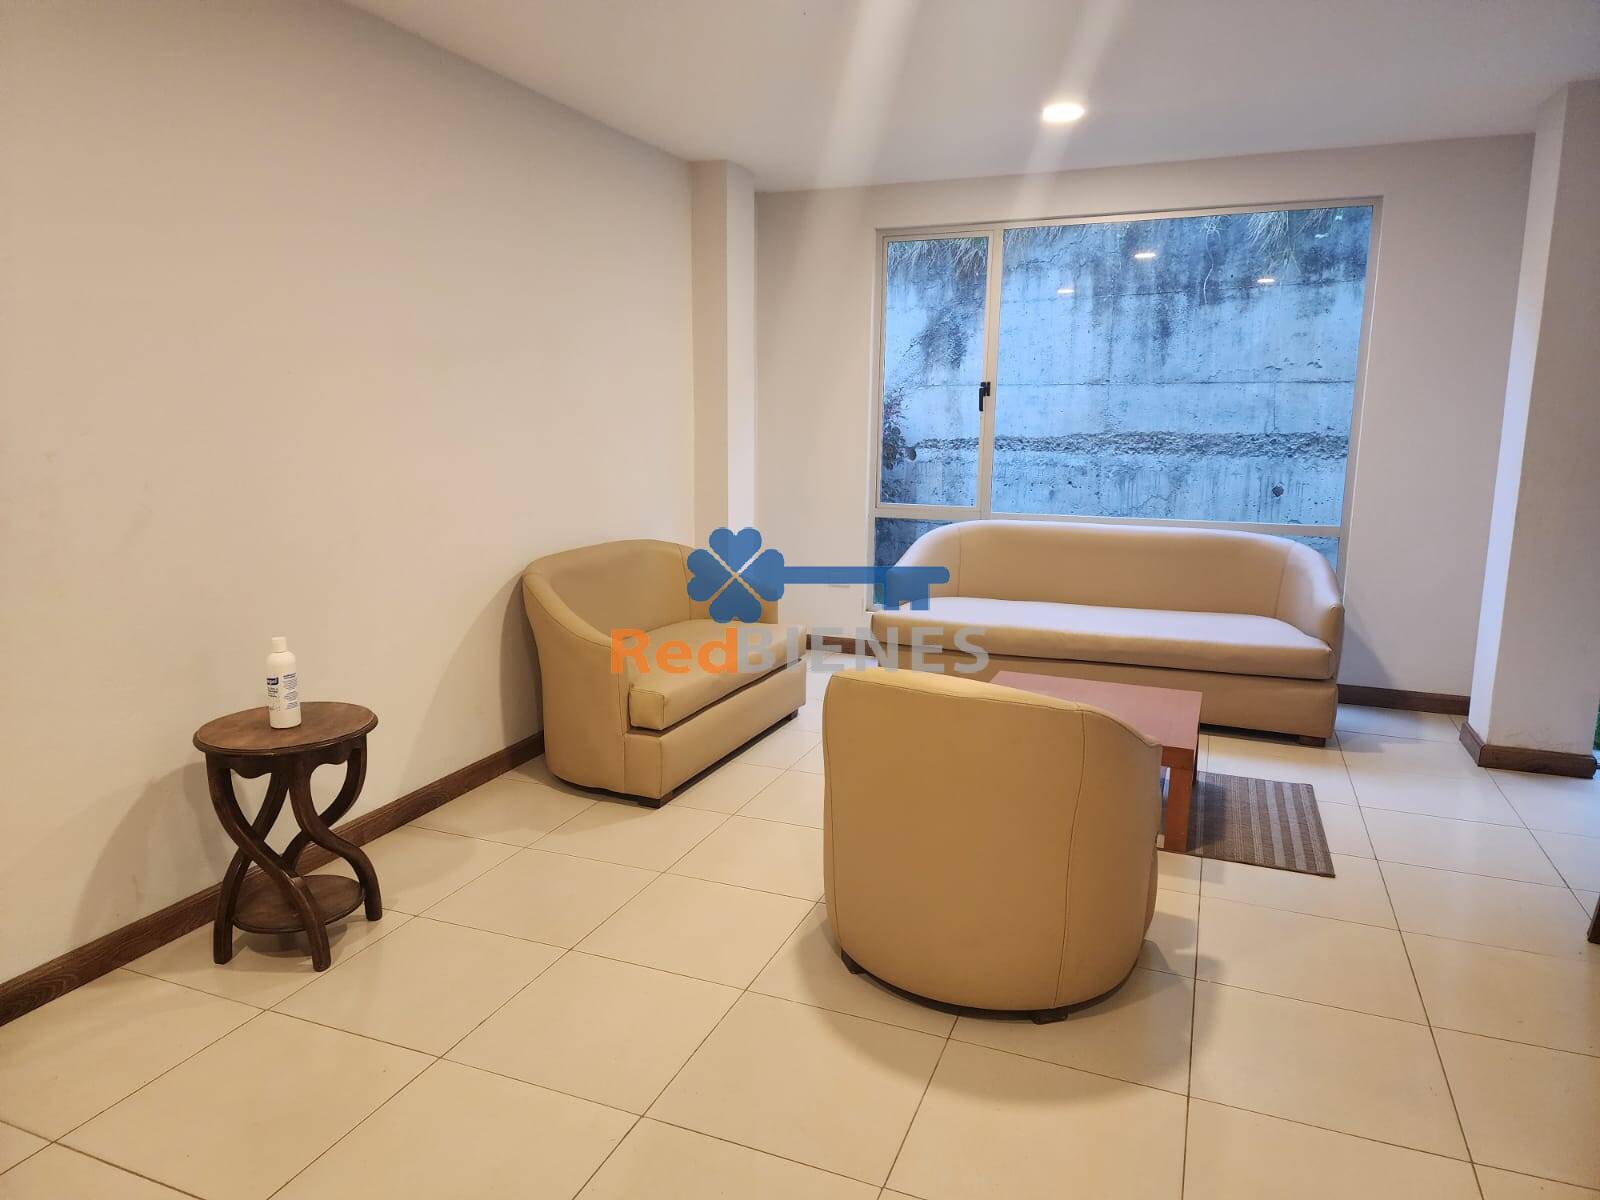 Última suite con área verde en condominio en Ricaurte, crédito VIP